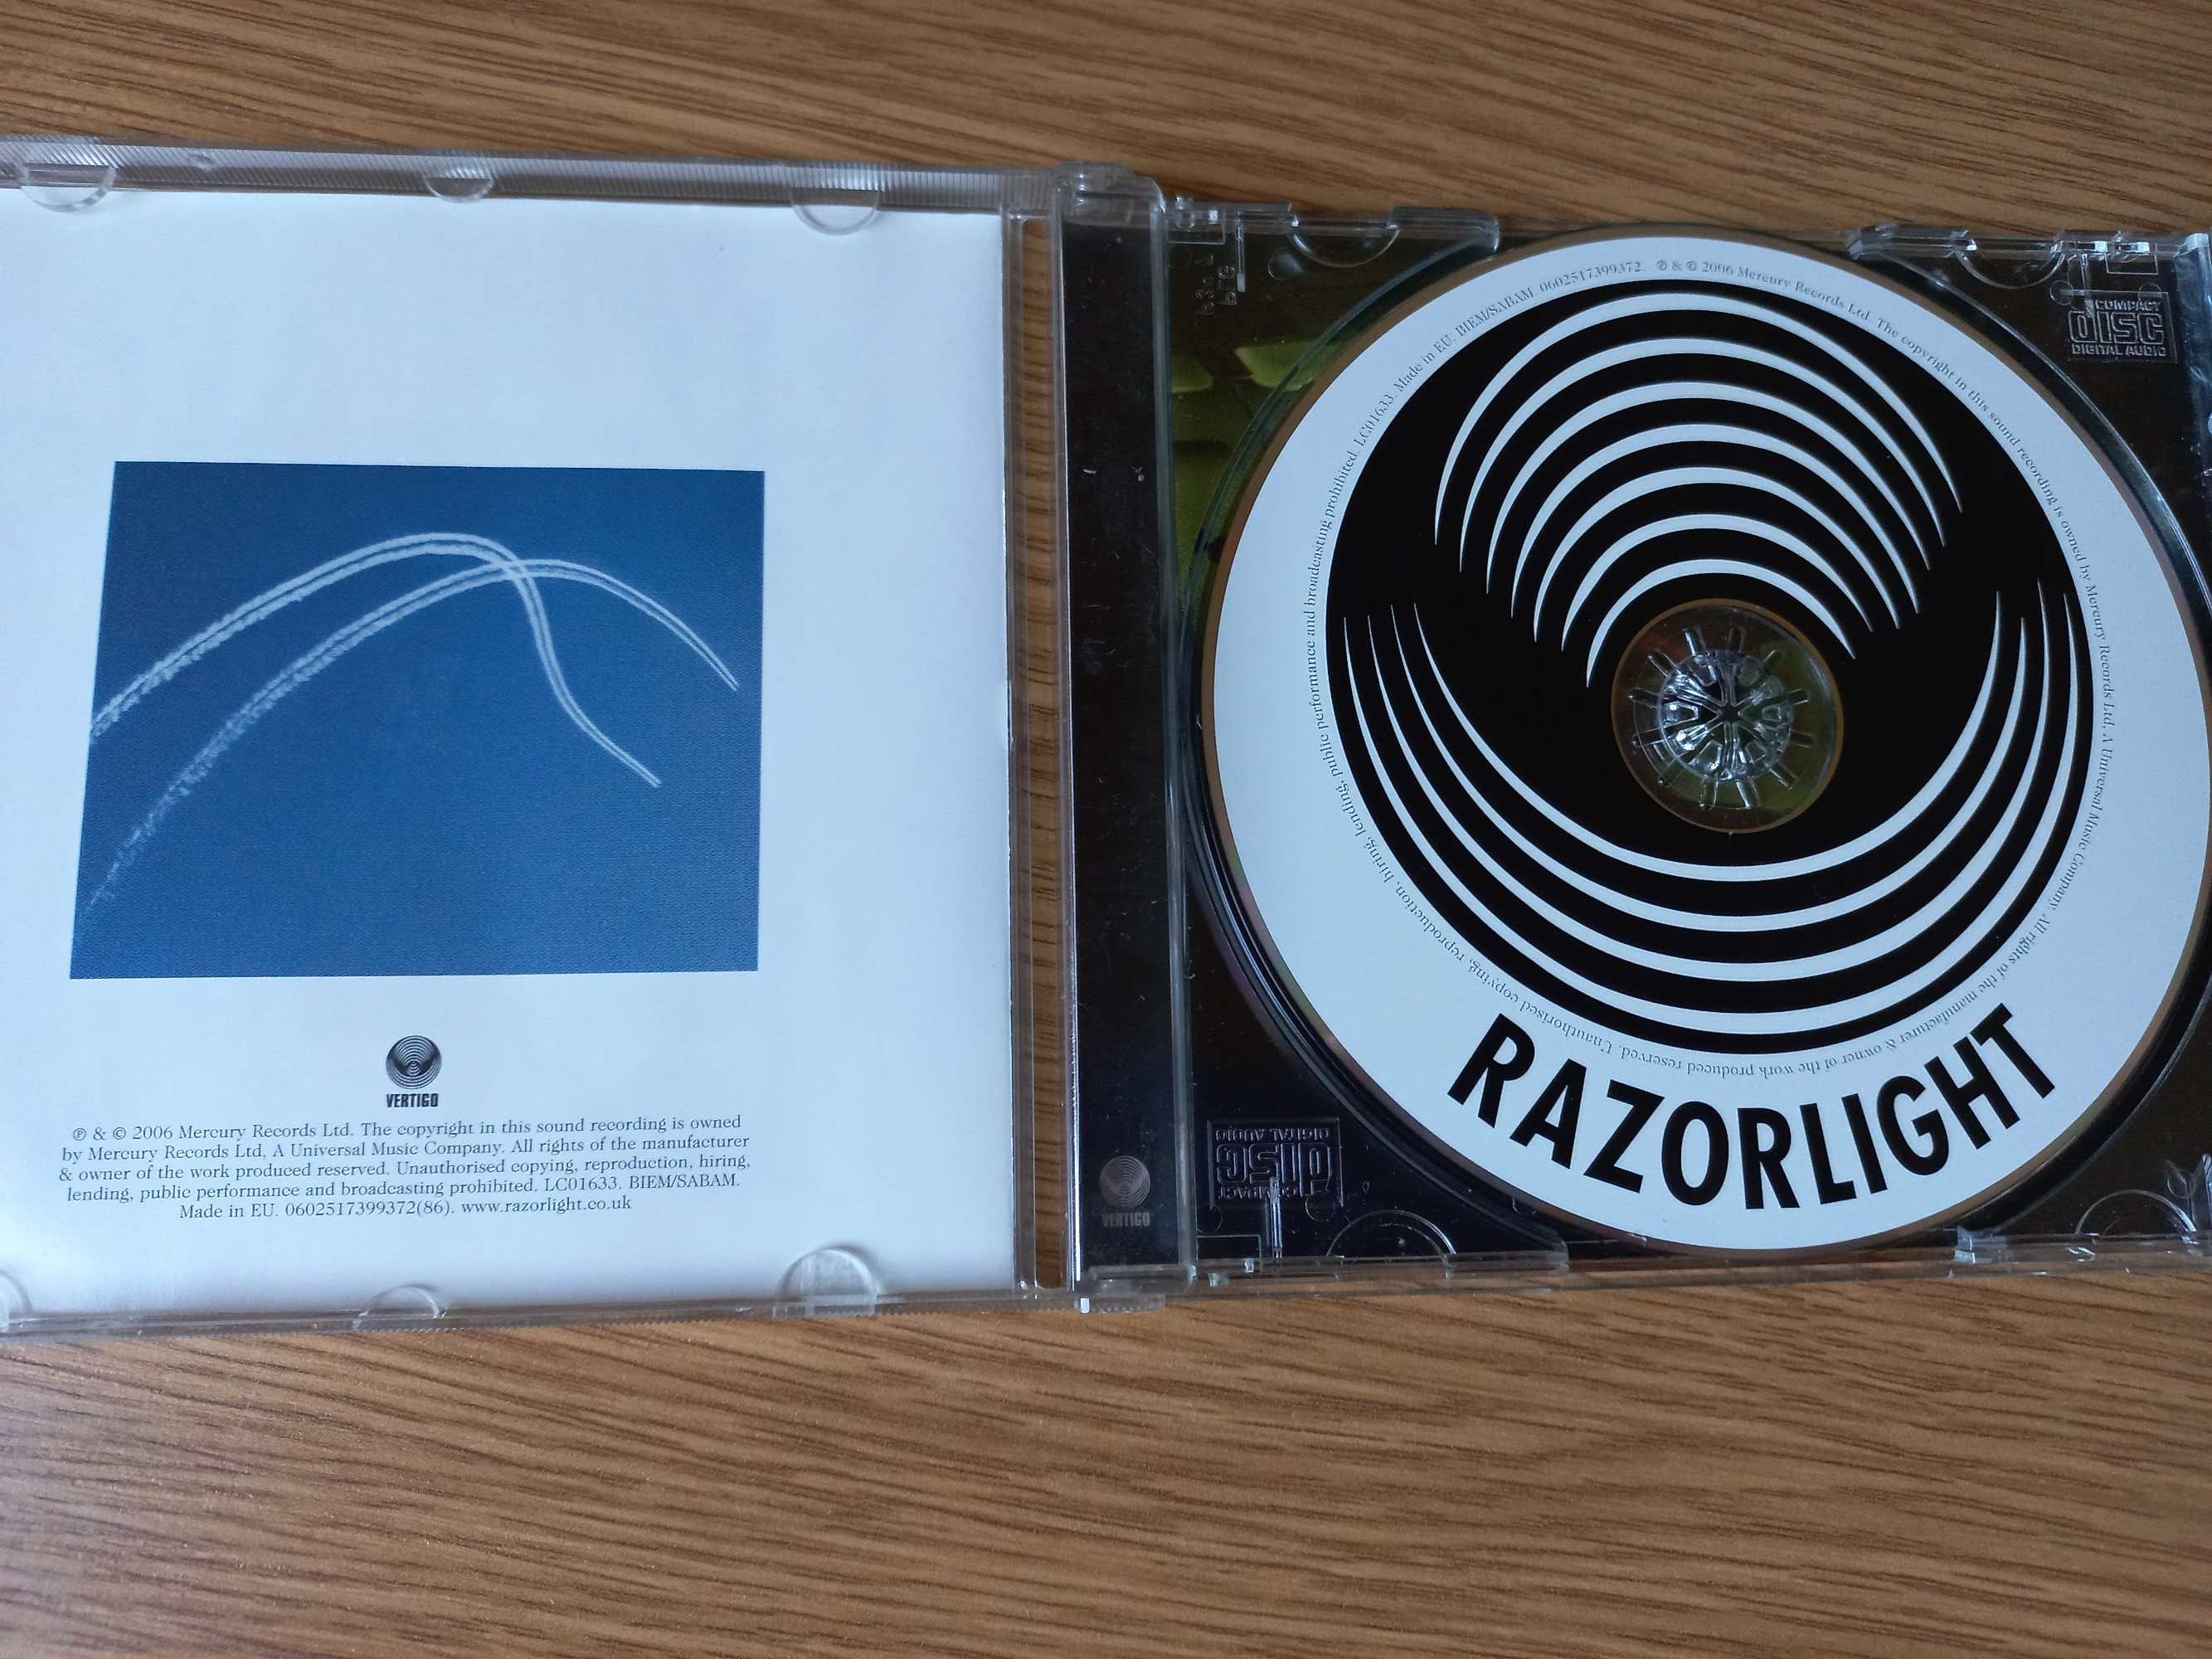 !!! przy zakupie druga płyta CD za 5 zł !! Razorlight